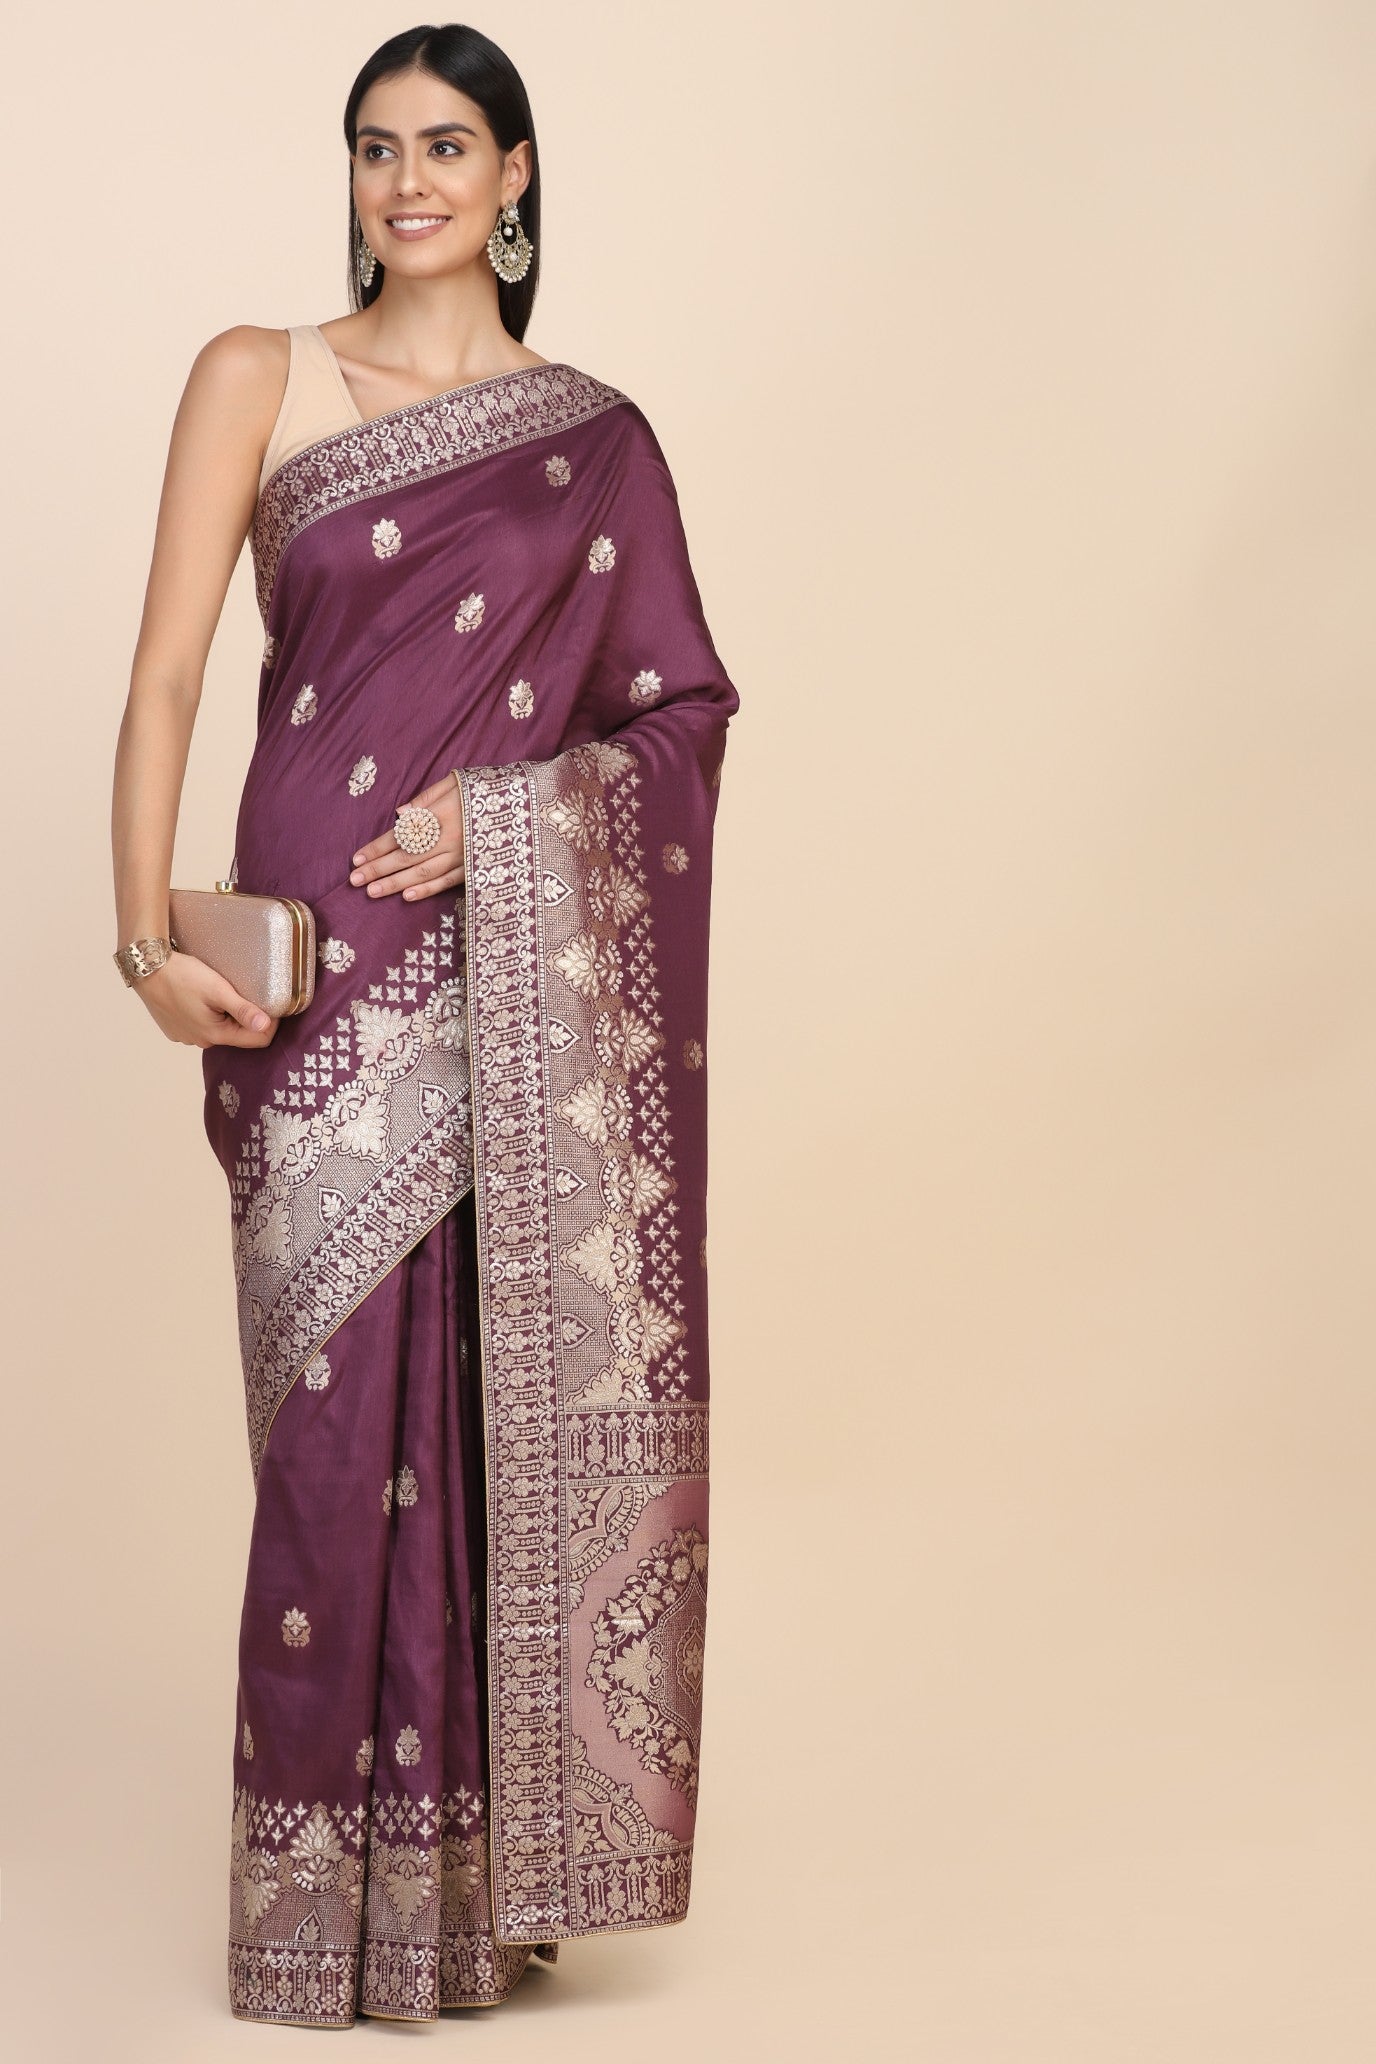 Adorable purple color floral motif woven saree